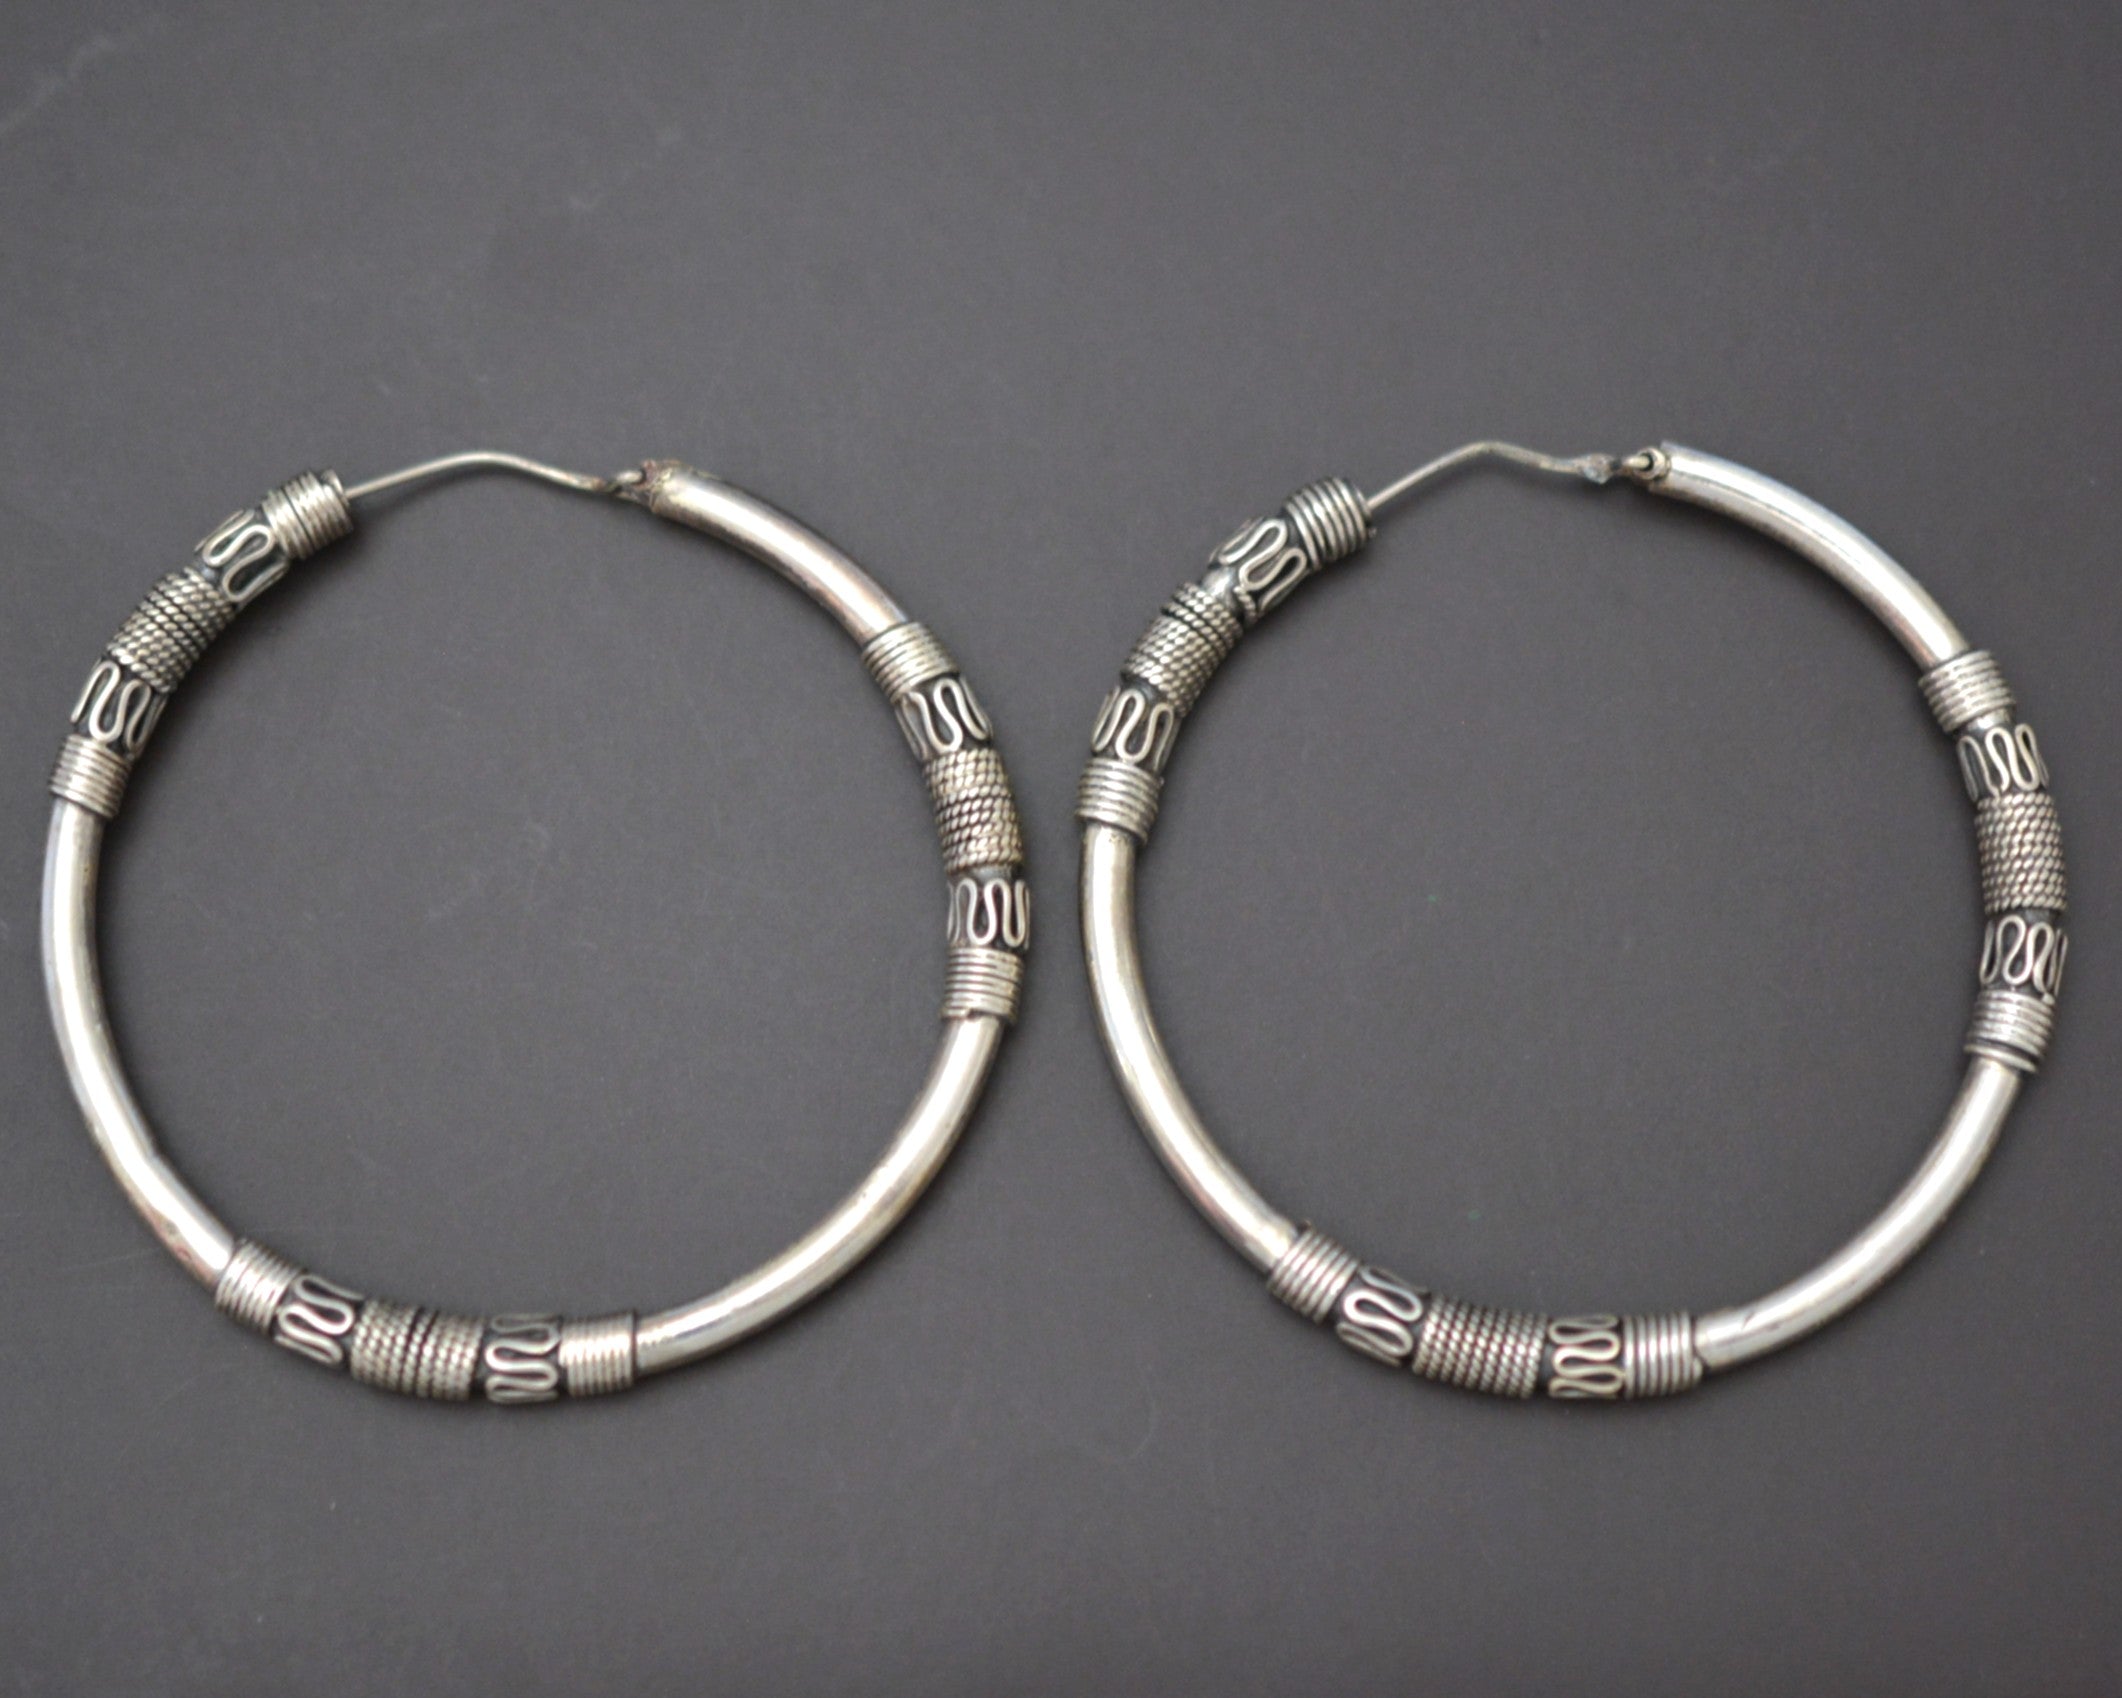 XXLarge Ethnic Bali Hoop Earrings with Wire Work